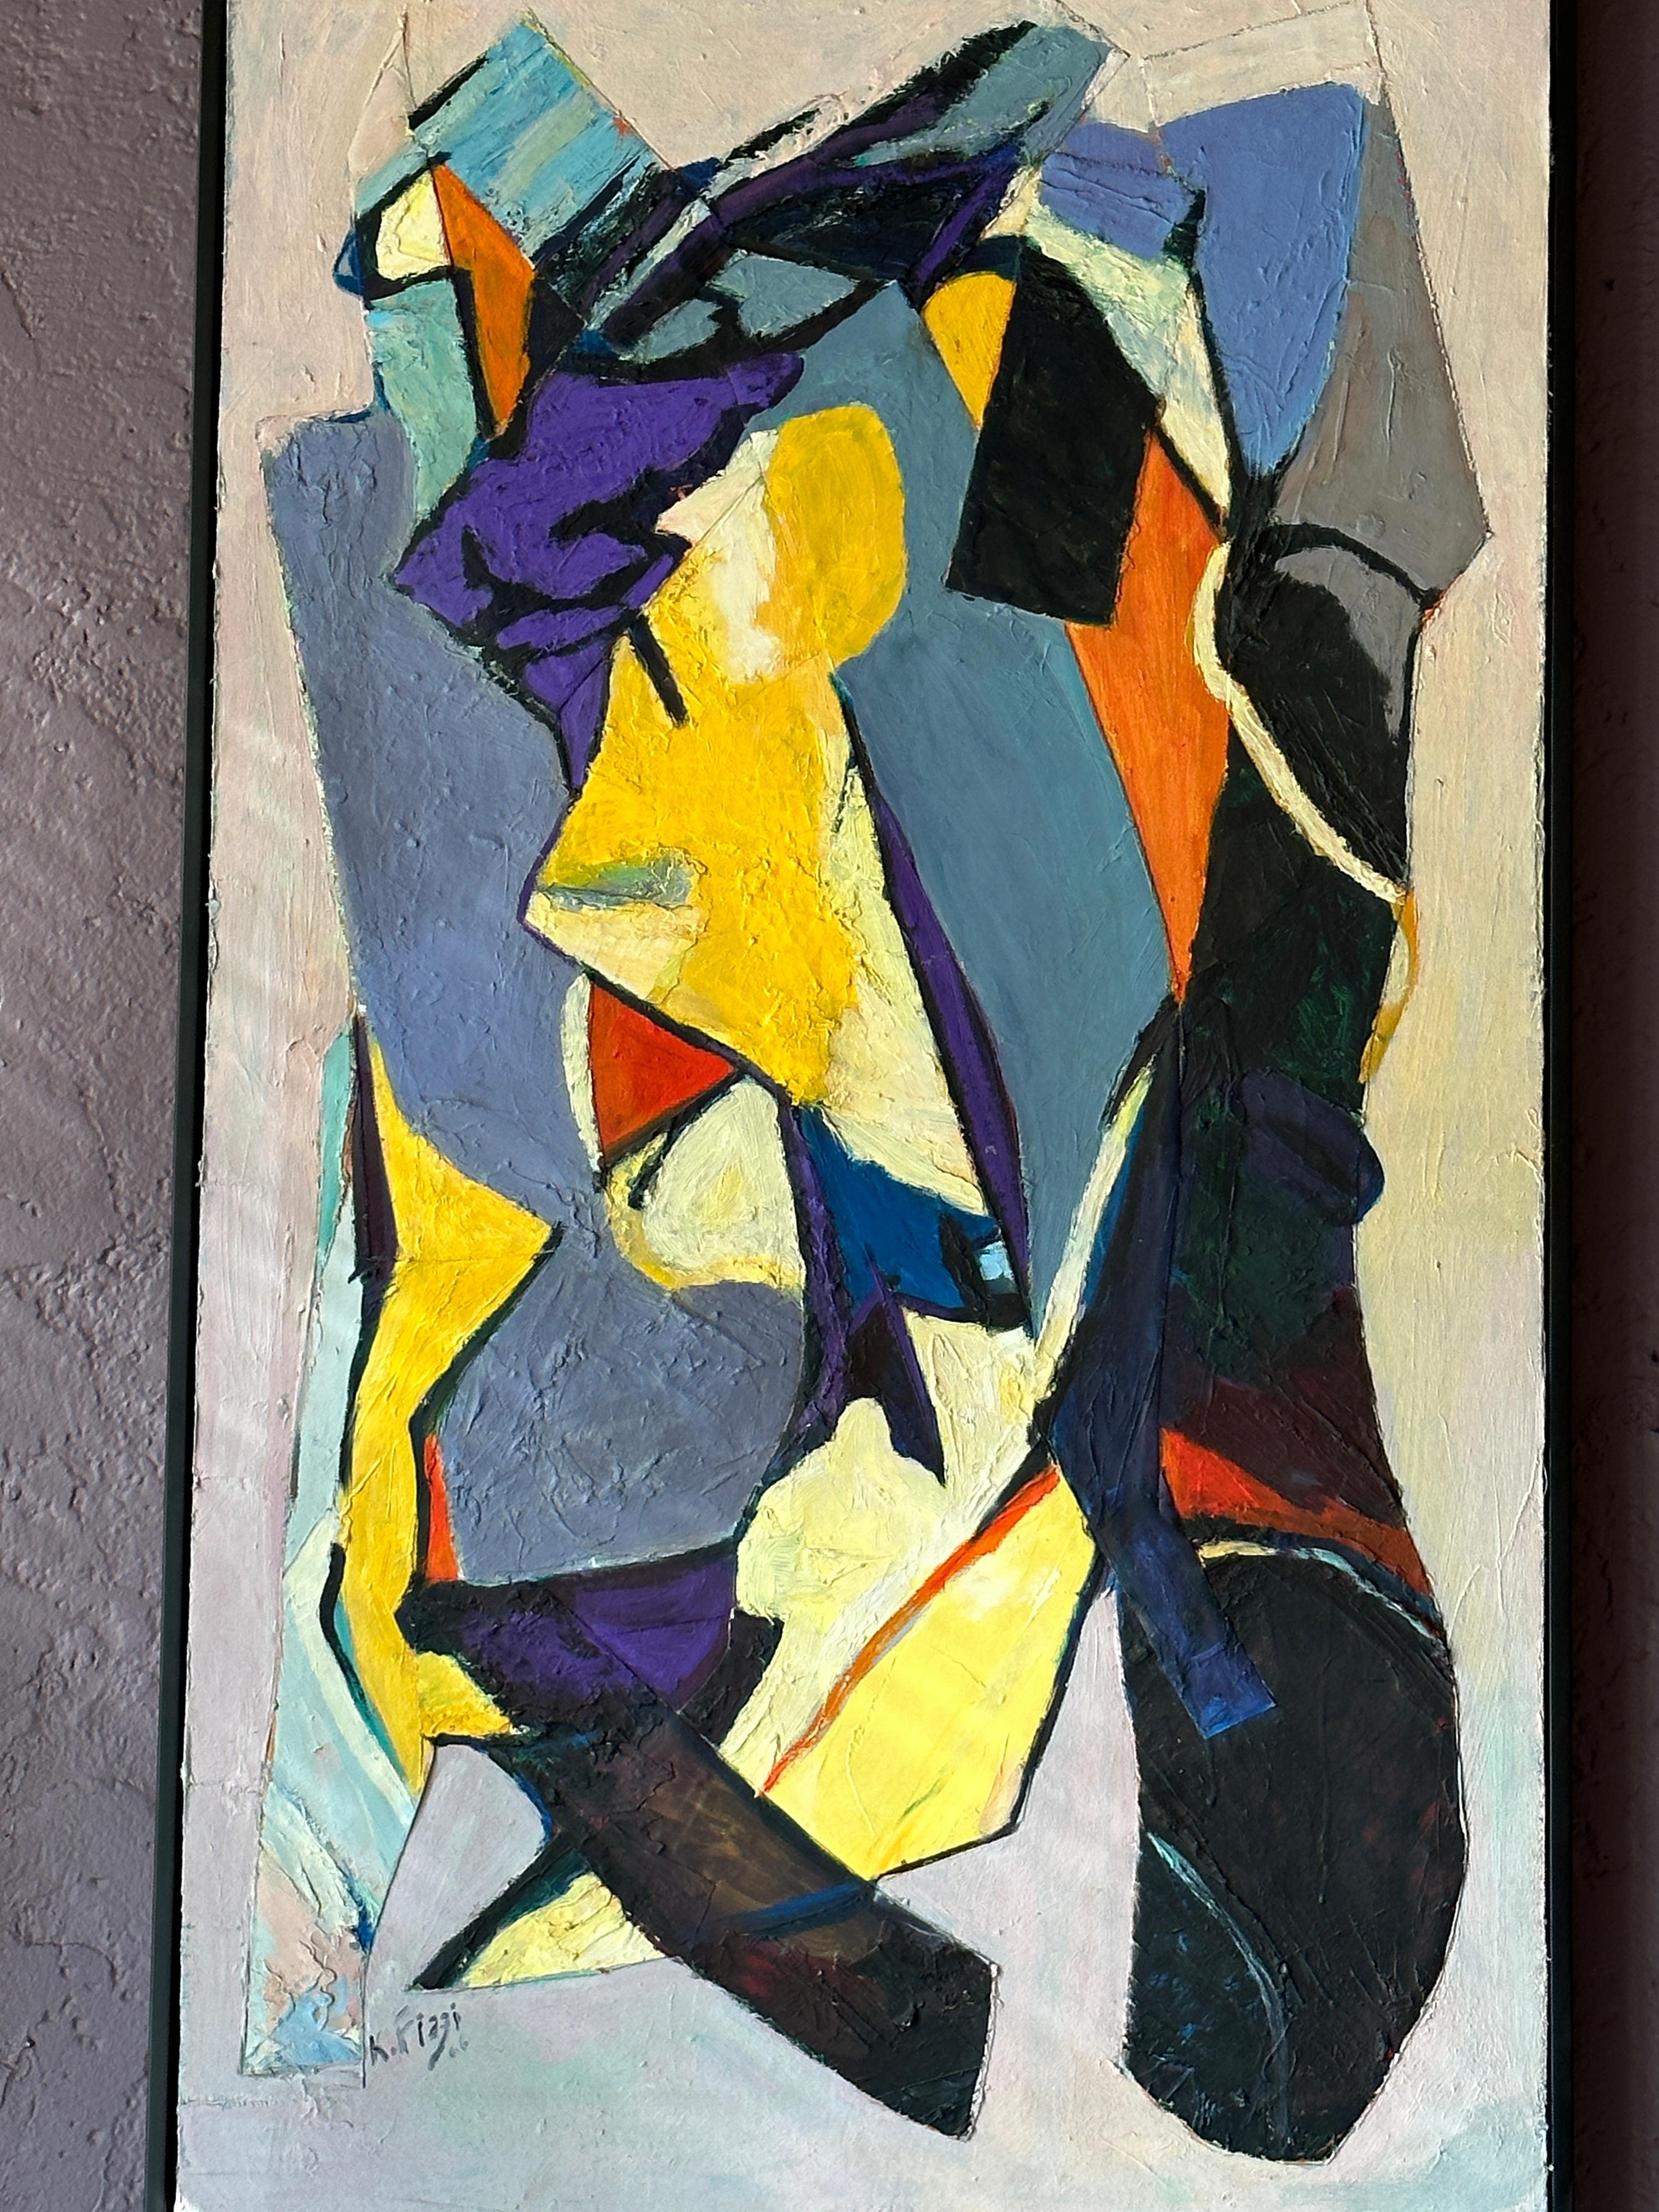 Dans le chef-d'œuvre acrylique abstrait vertical d'Eric Fiazi, une symphonie de couleurs danse sur une toile lilas sereine, capturant l'essence des complexités vibrantes de la vie. Les touches entrelacées de violet, de bleu et de jaune créent une